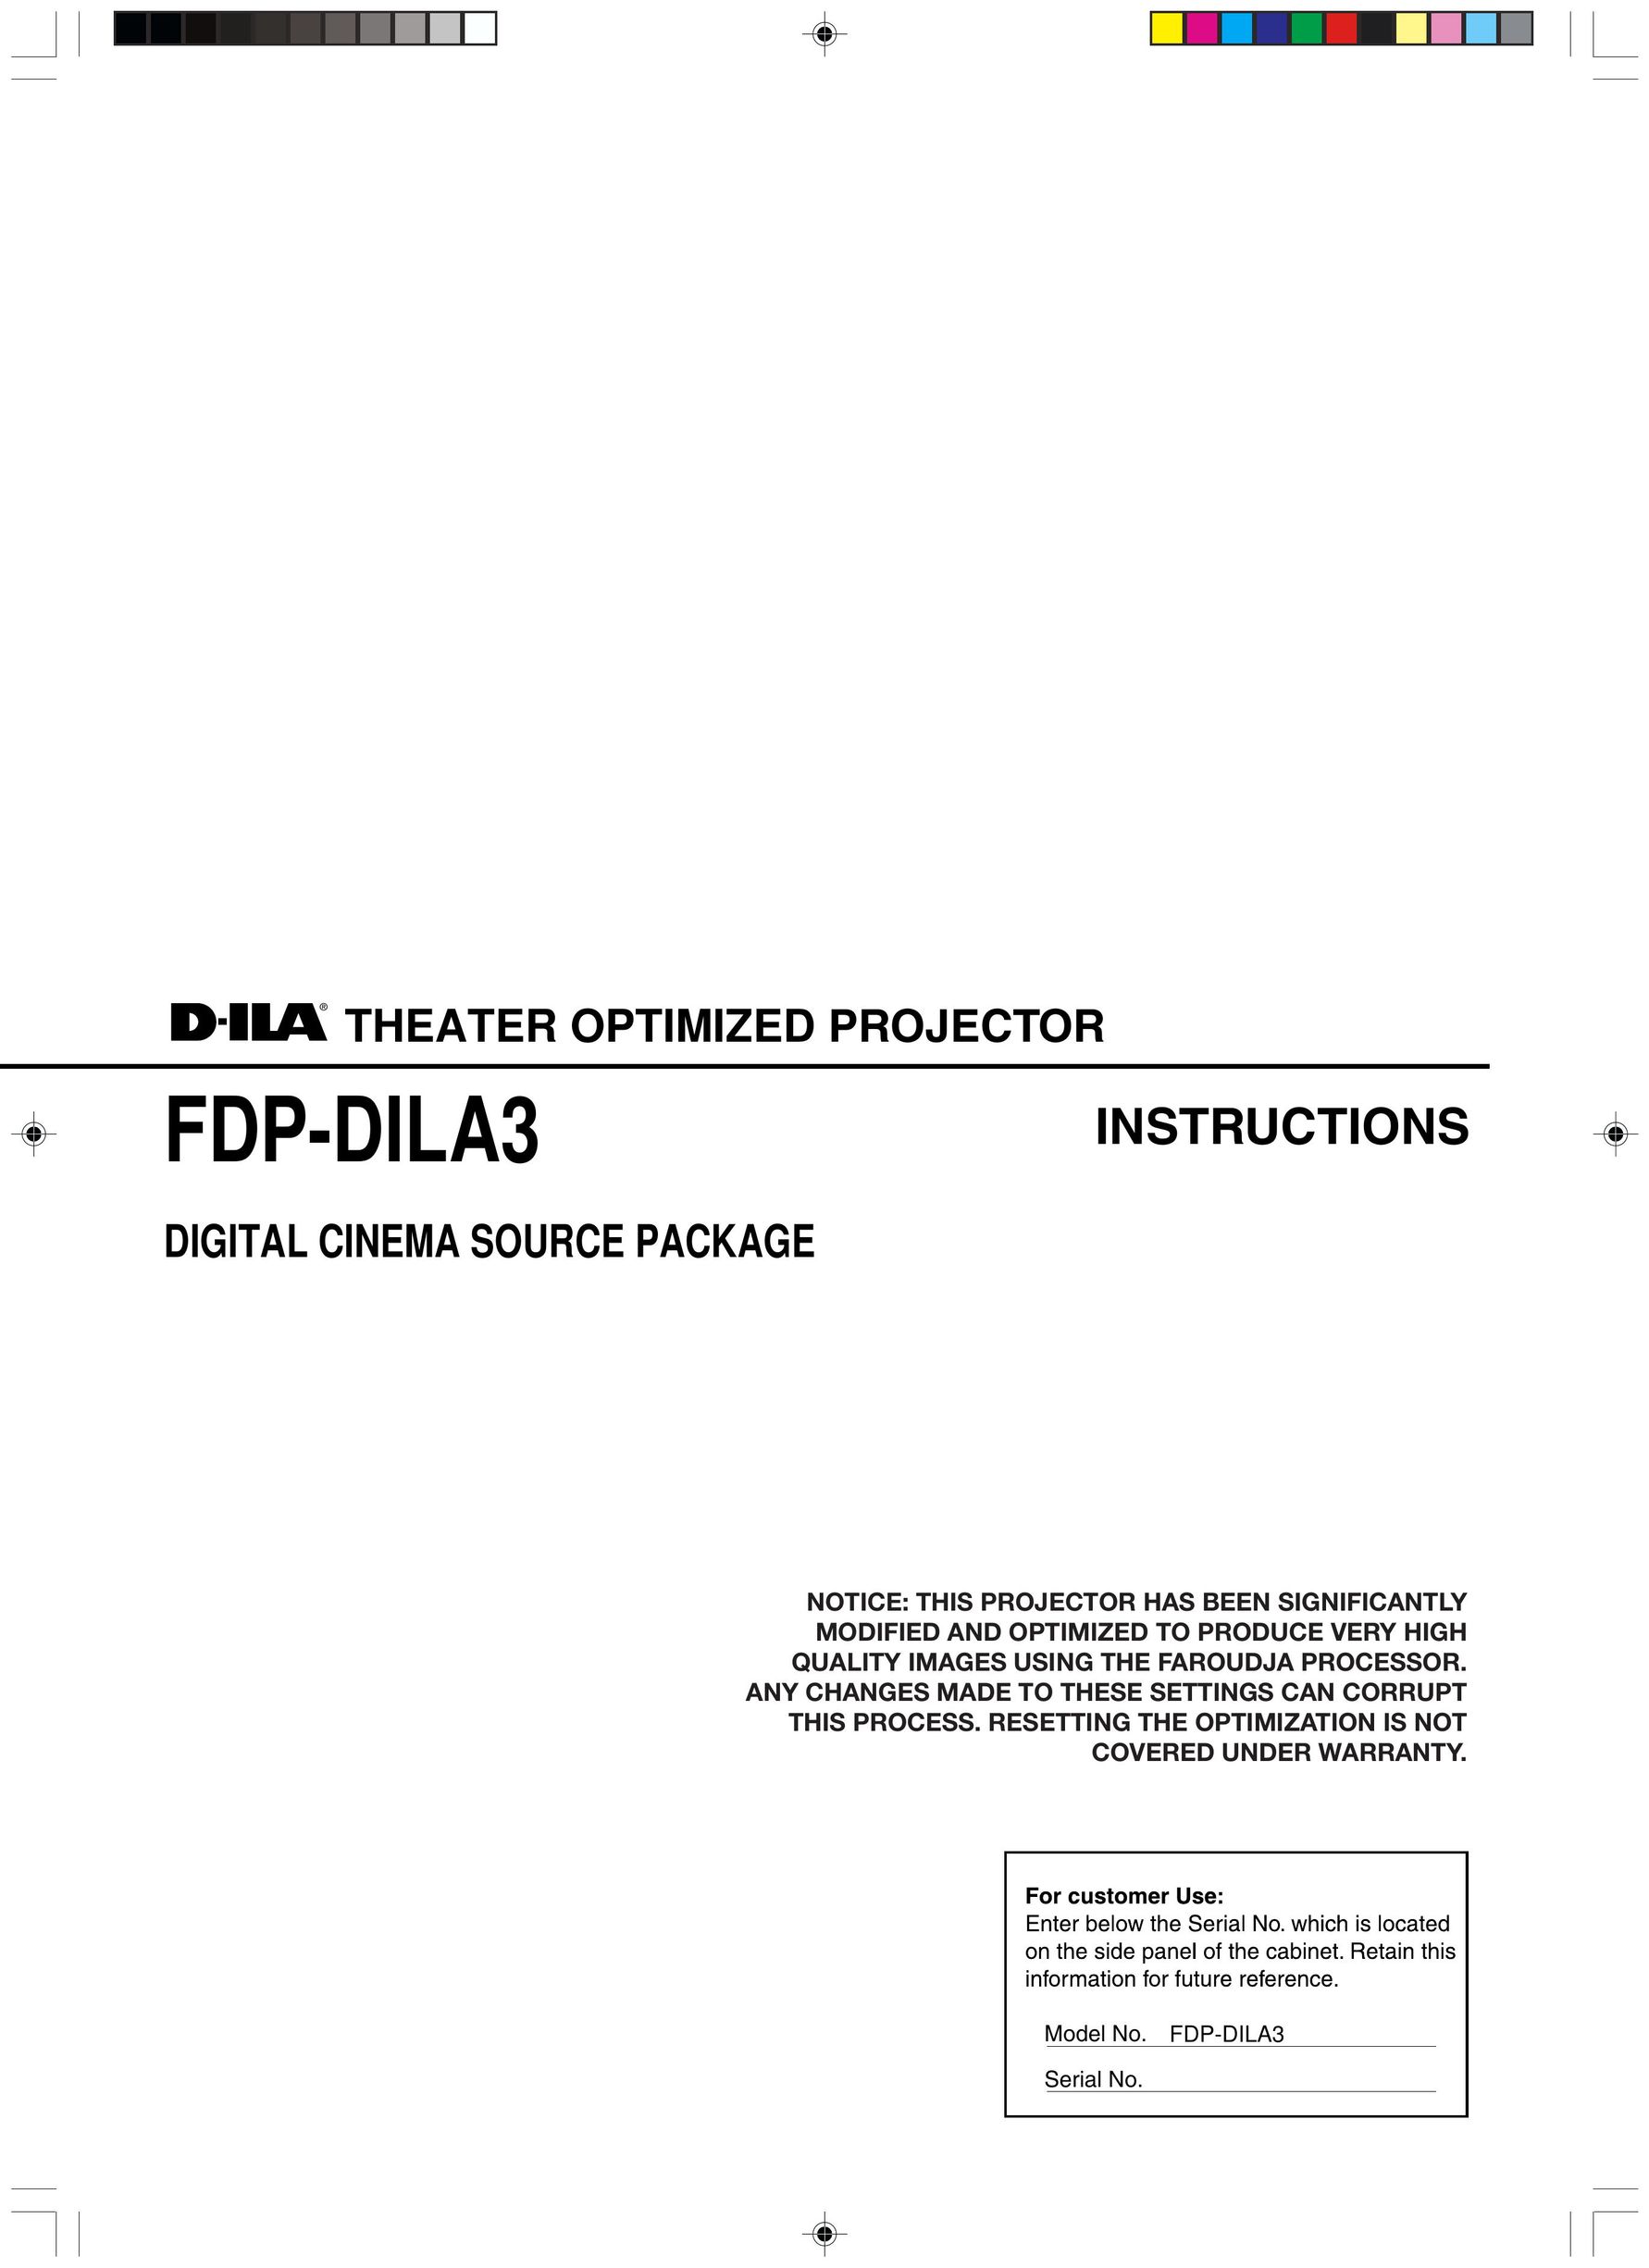 Meridian Audio FDP-DILA3 Projector User Manual